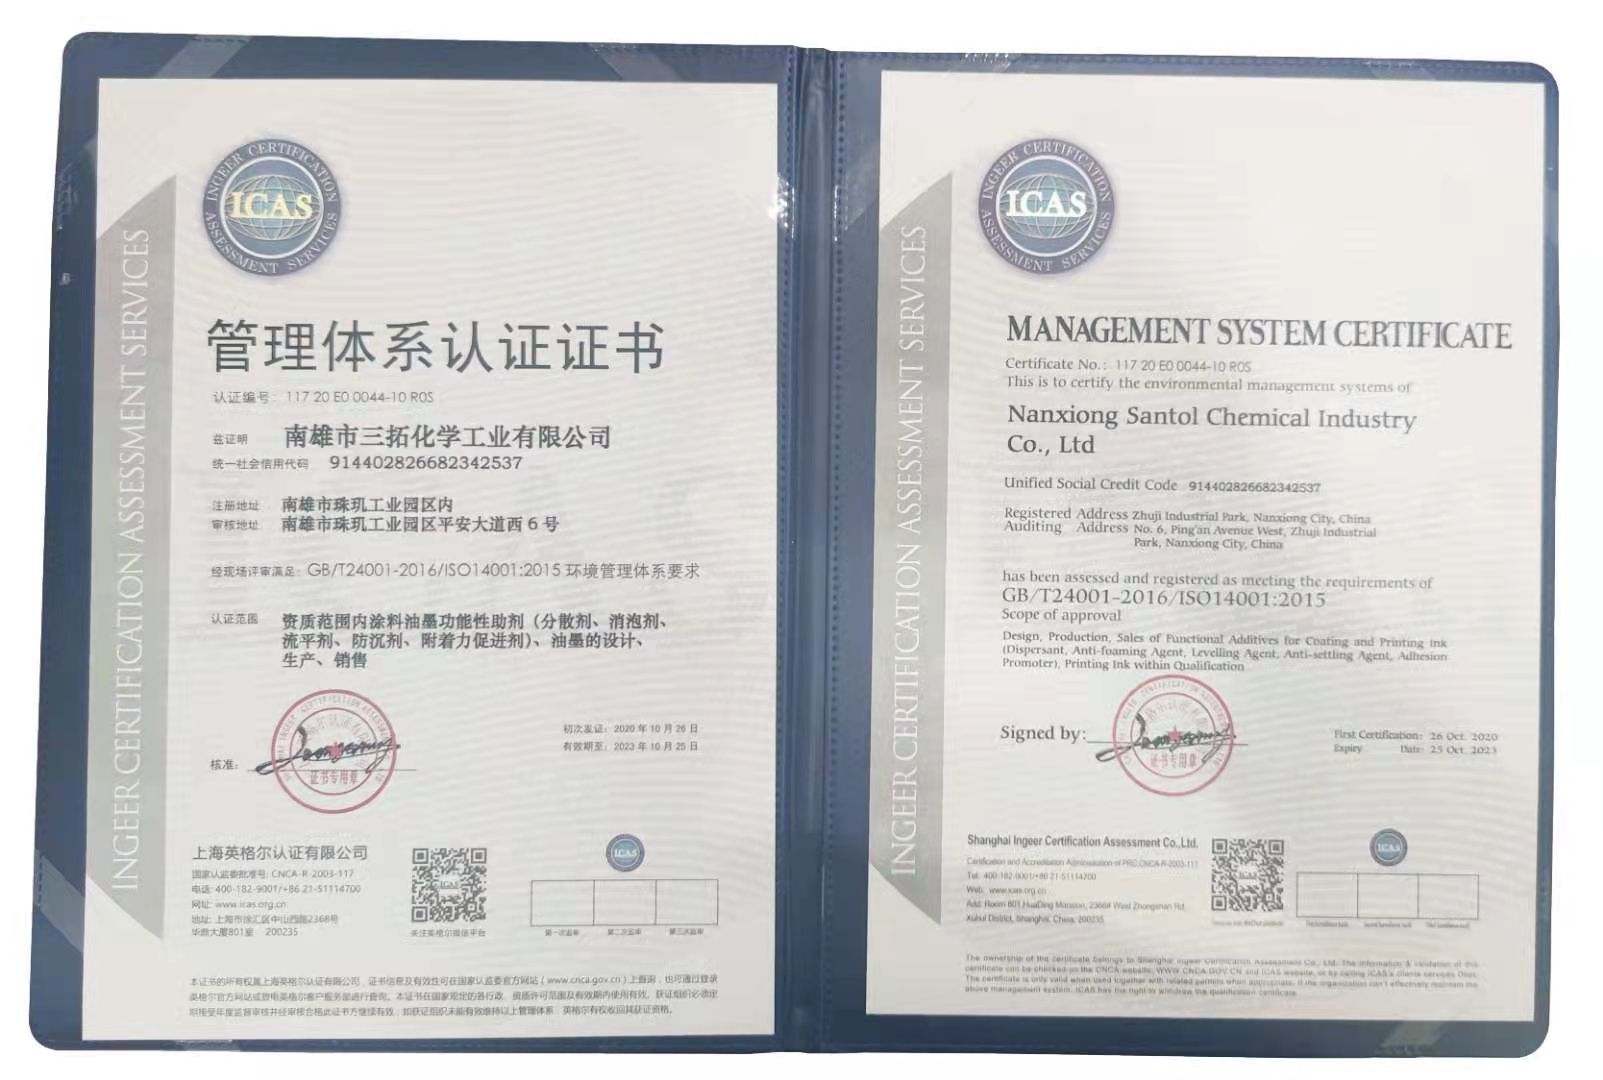 三拓化學已全面通過ISO14001質量管理體系認證